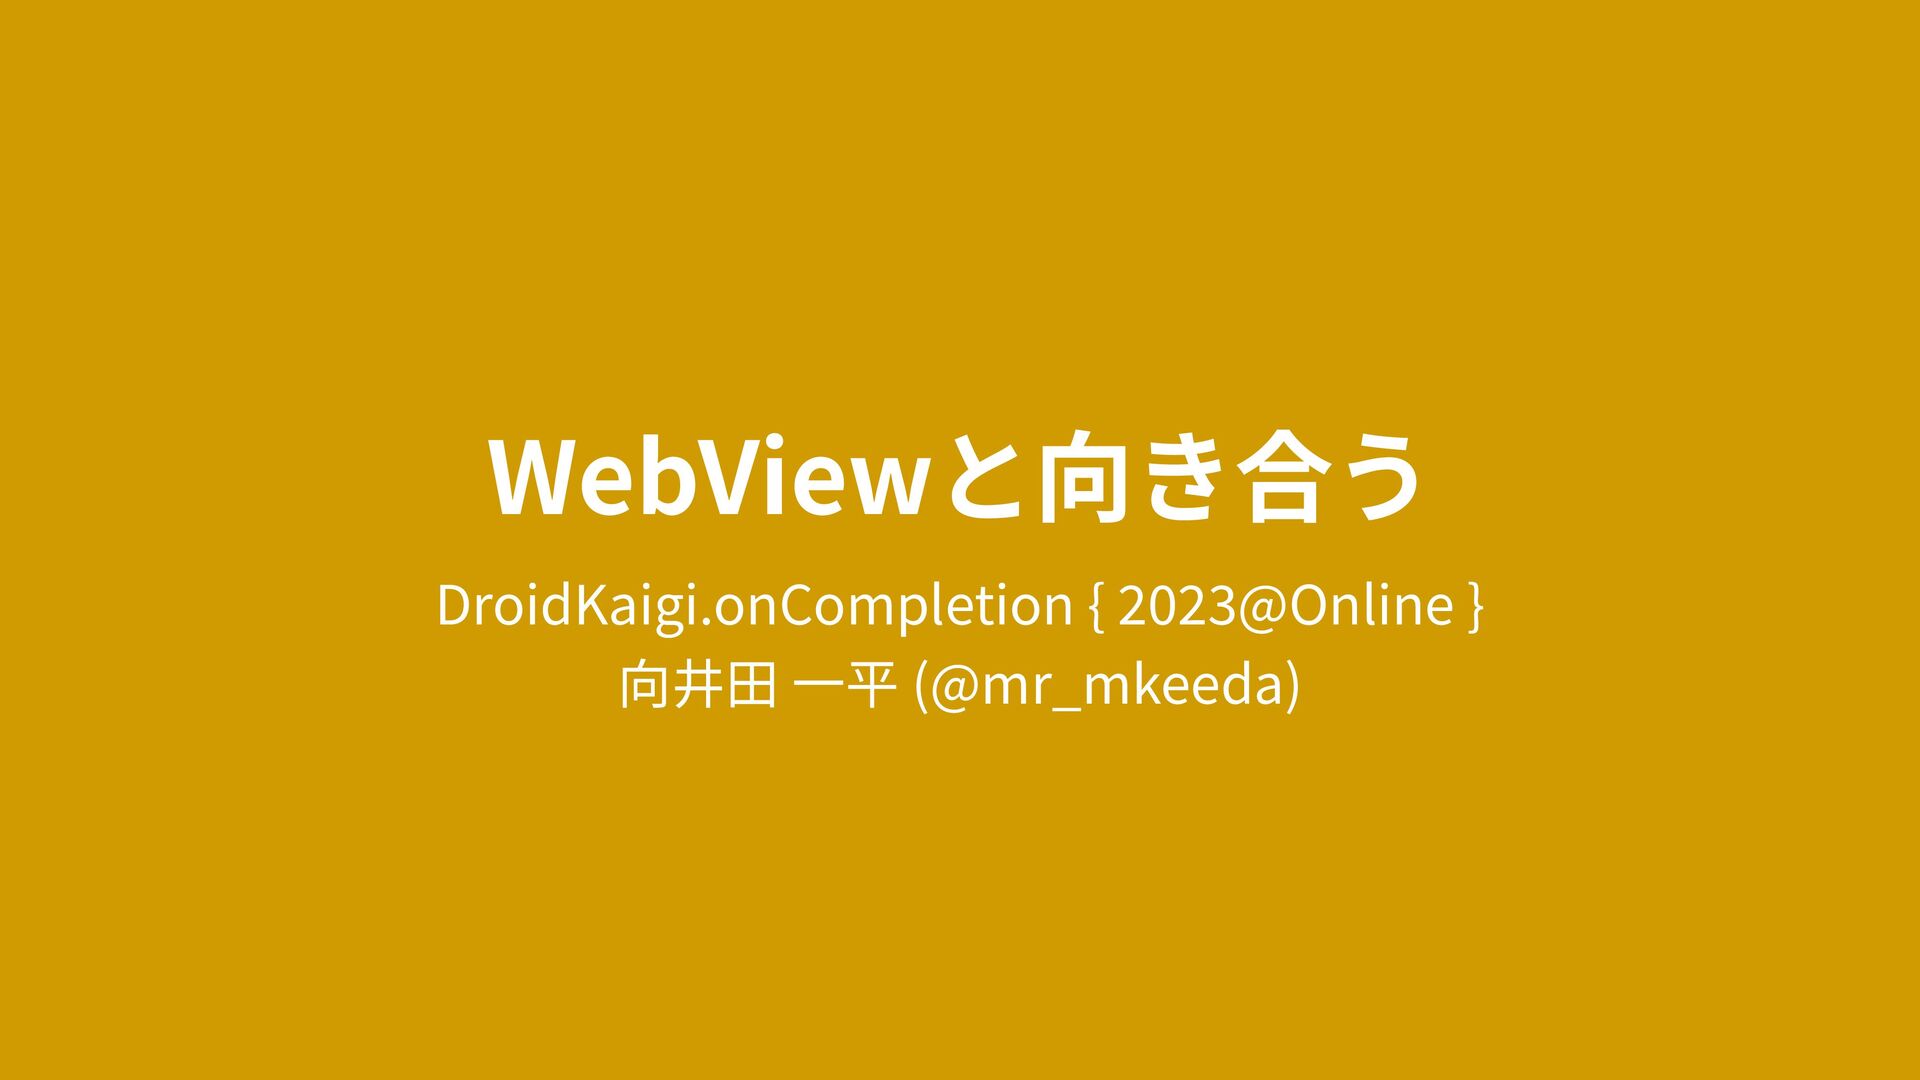 Slide Top: WebViewと向き合う